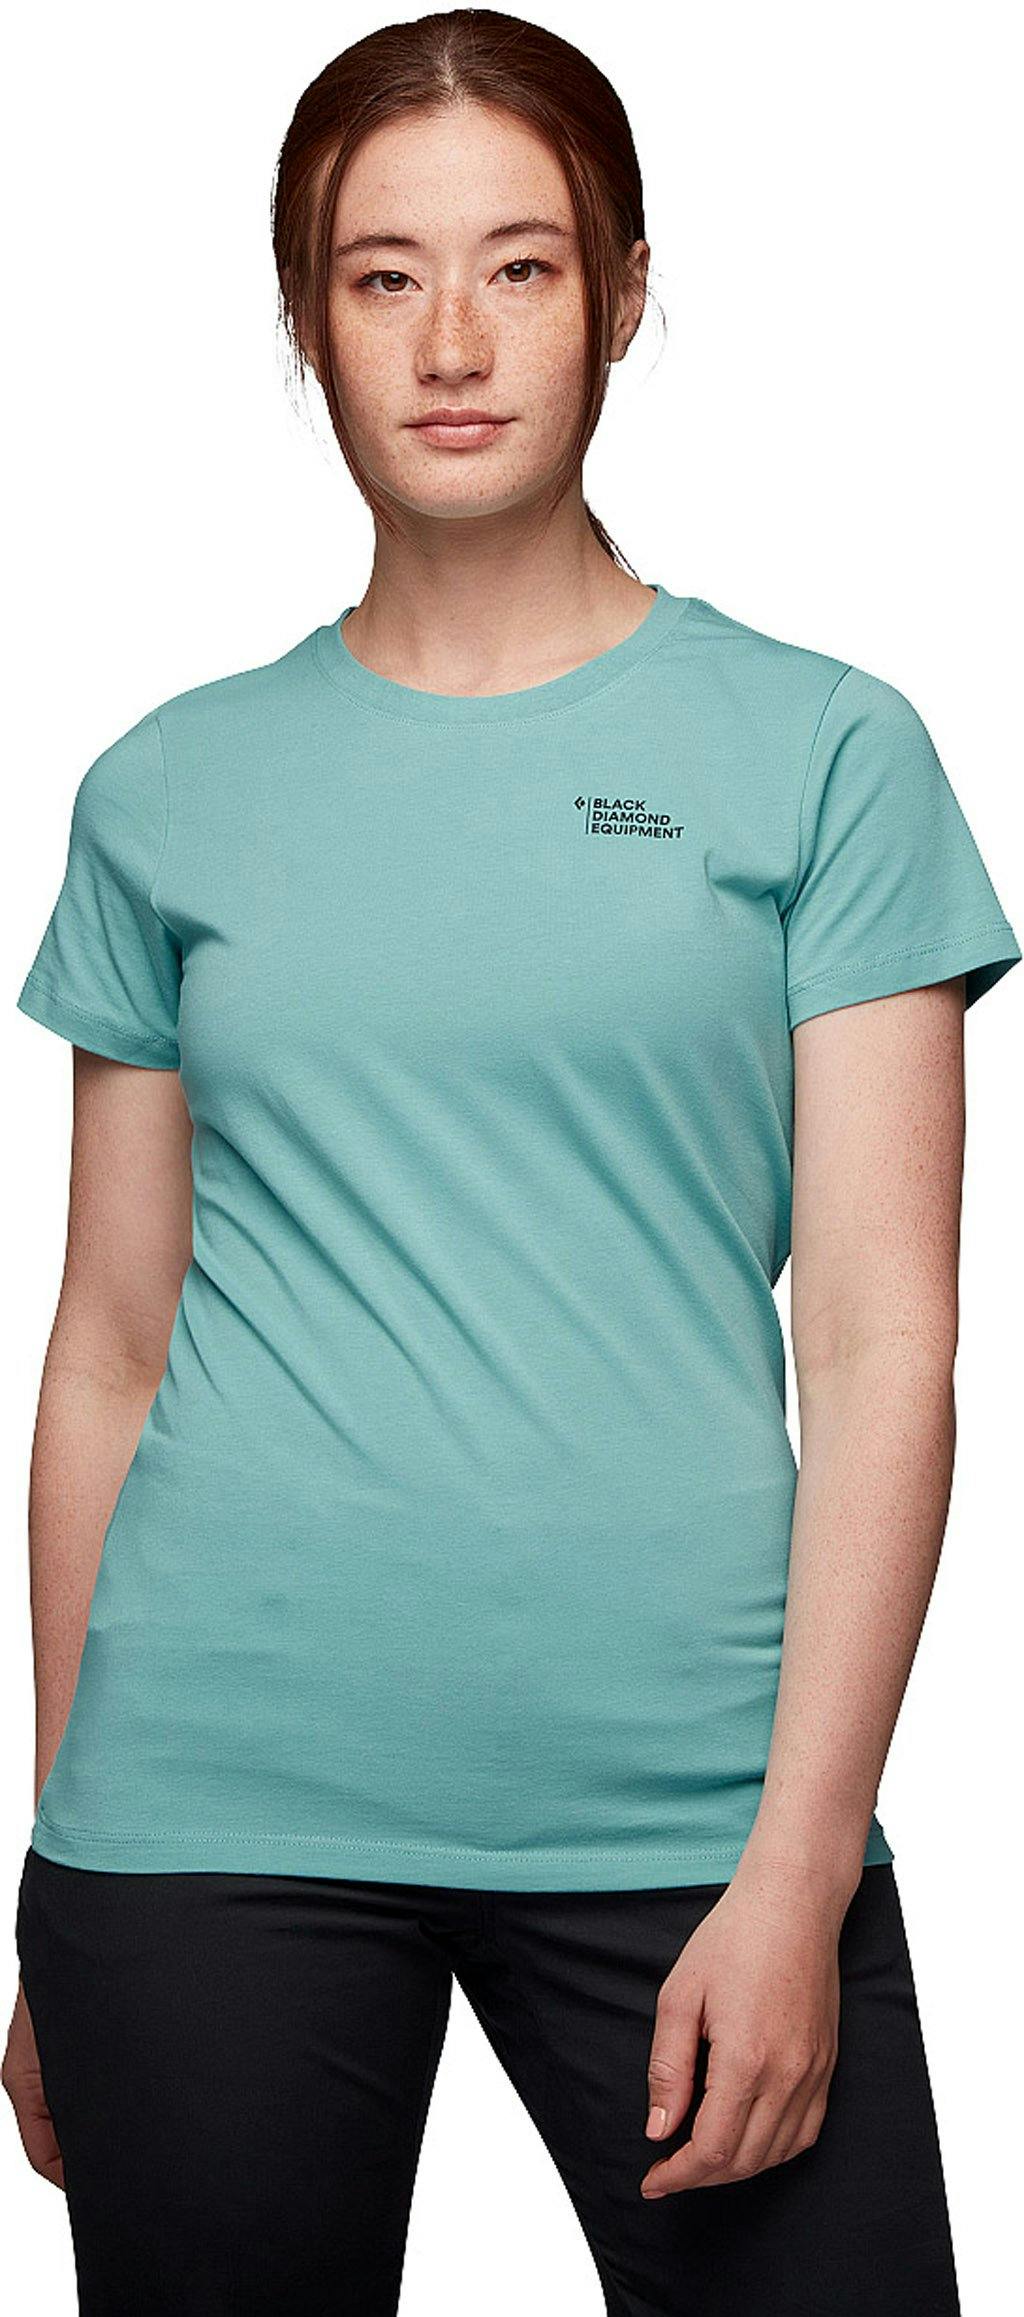 Image de produit pour T-shirt à manches courtes Desert To Mountain - Femme